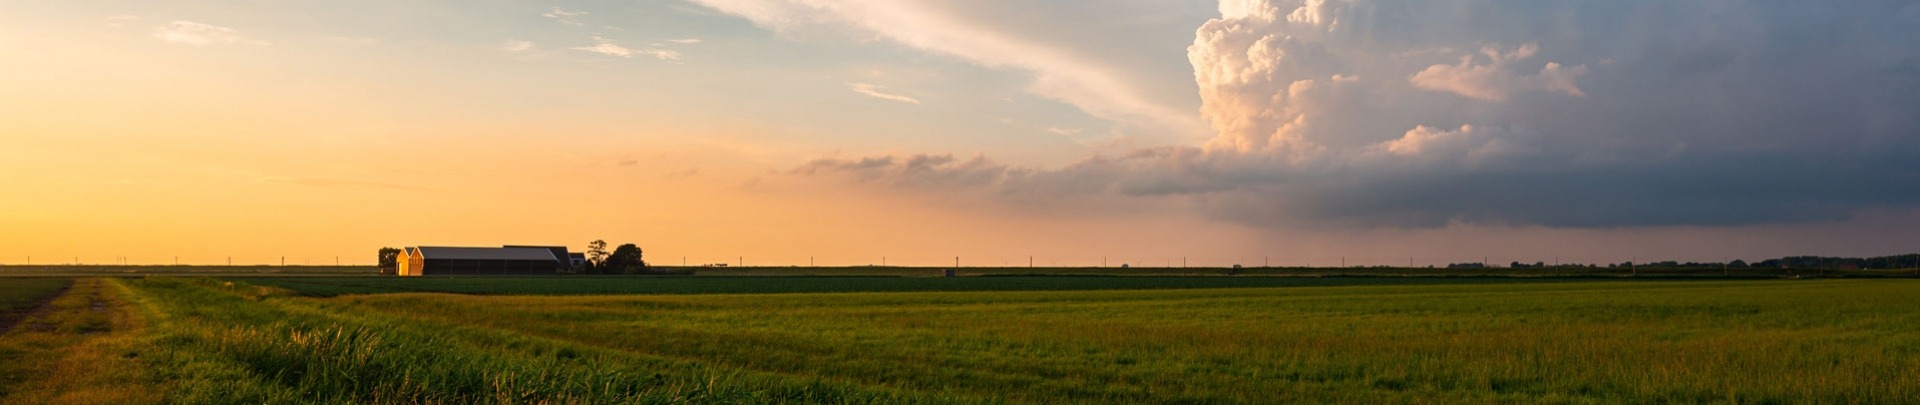 Een boerderij in de verte en onweerswolk op het Nederlandse platteland tijdens zonsondergang